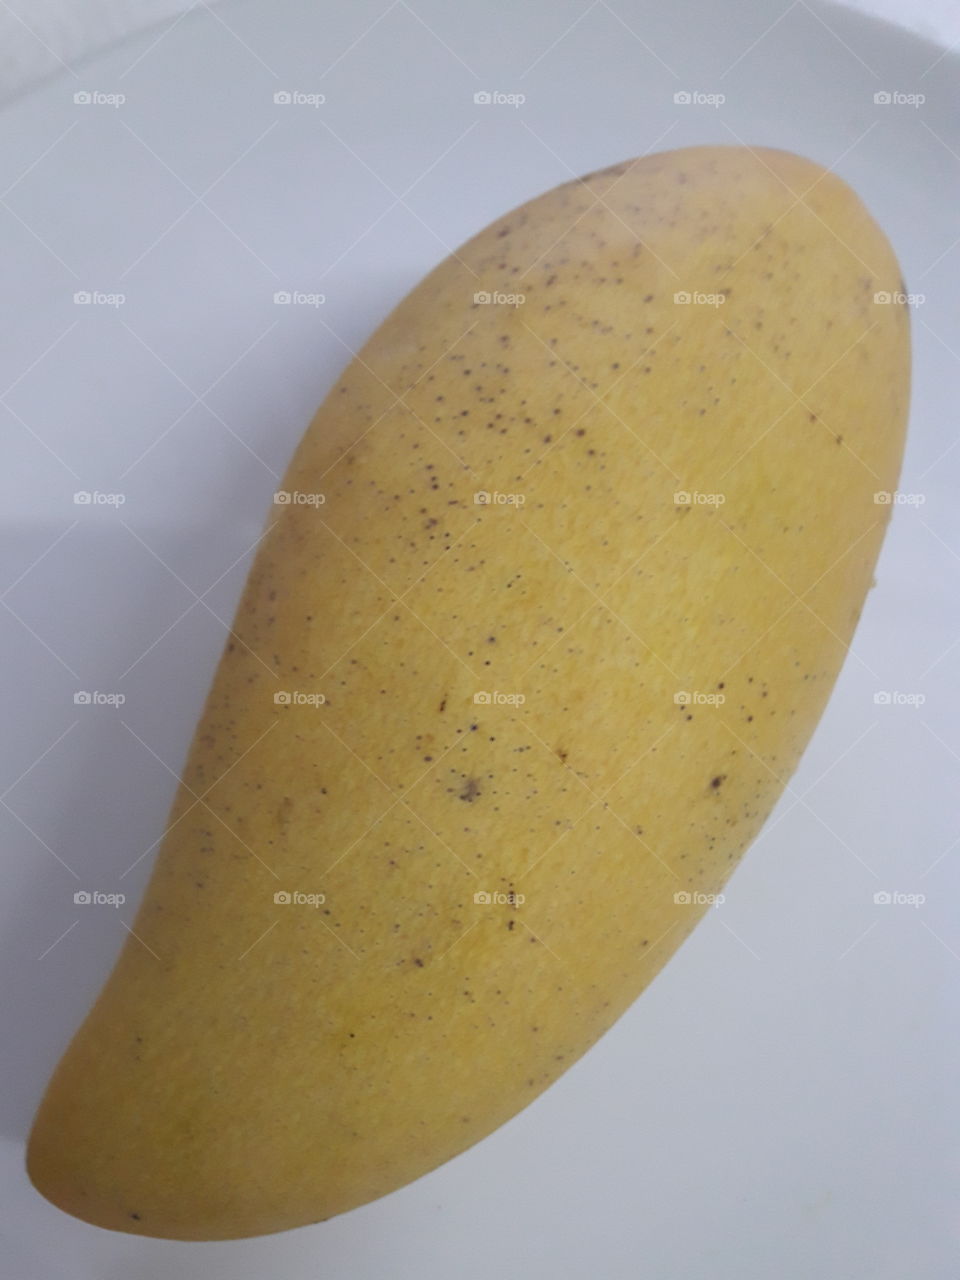 yellow ripe mango "nam dok mai"